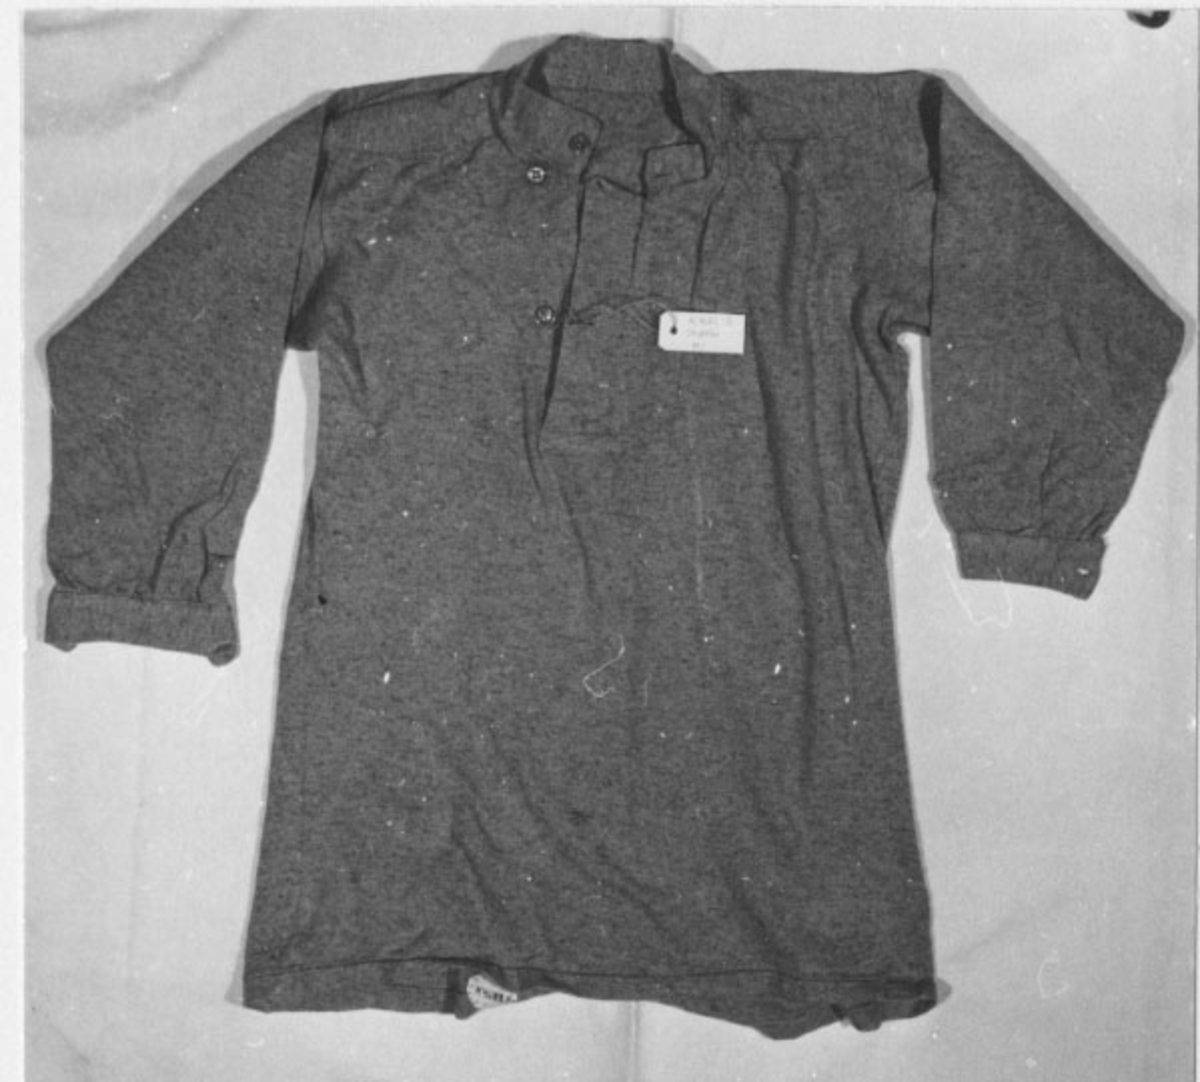 Skjorta av grått bomullstyg. Knäpps famtill och runt halsen med tre knappar av bleck och runt handloven med en knapp.
Märkning: 1 y 263 205 samt 3 kronstämplar, i svart.